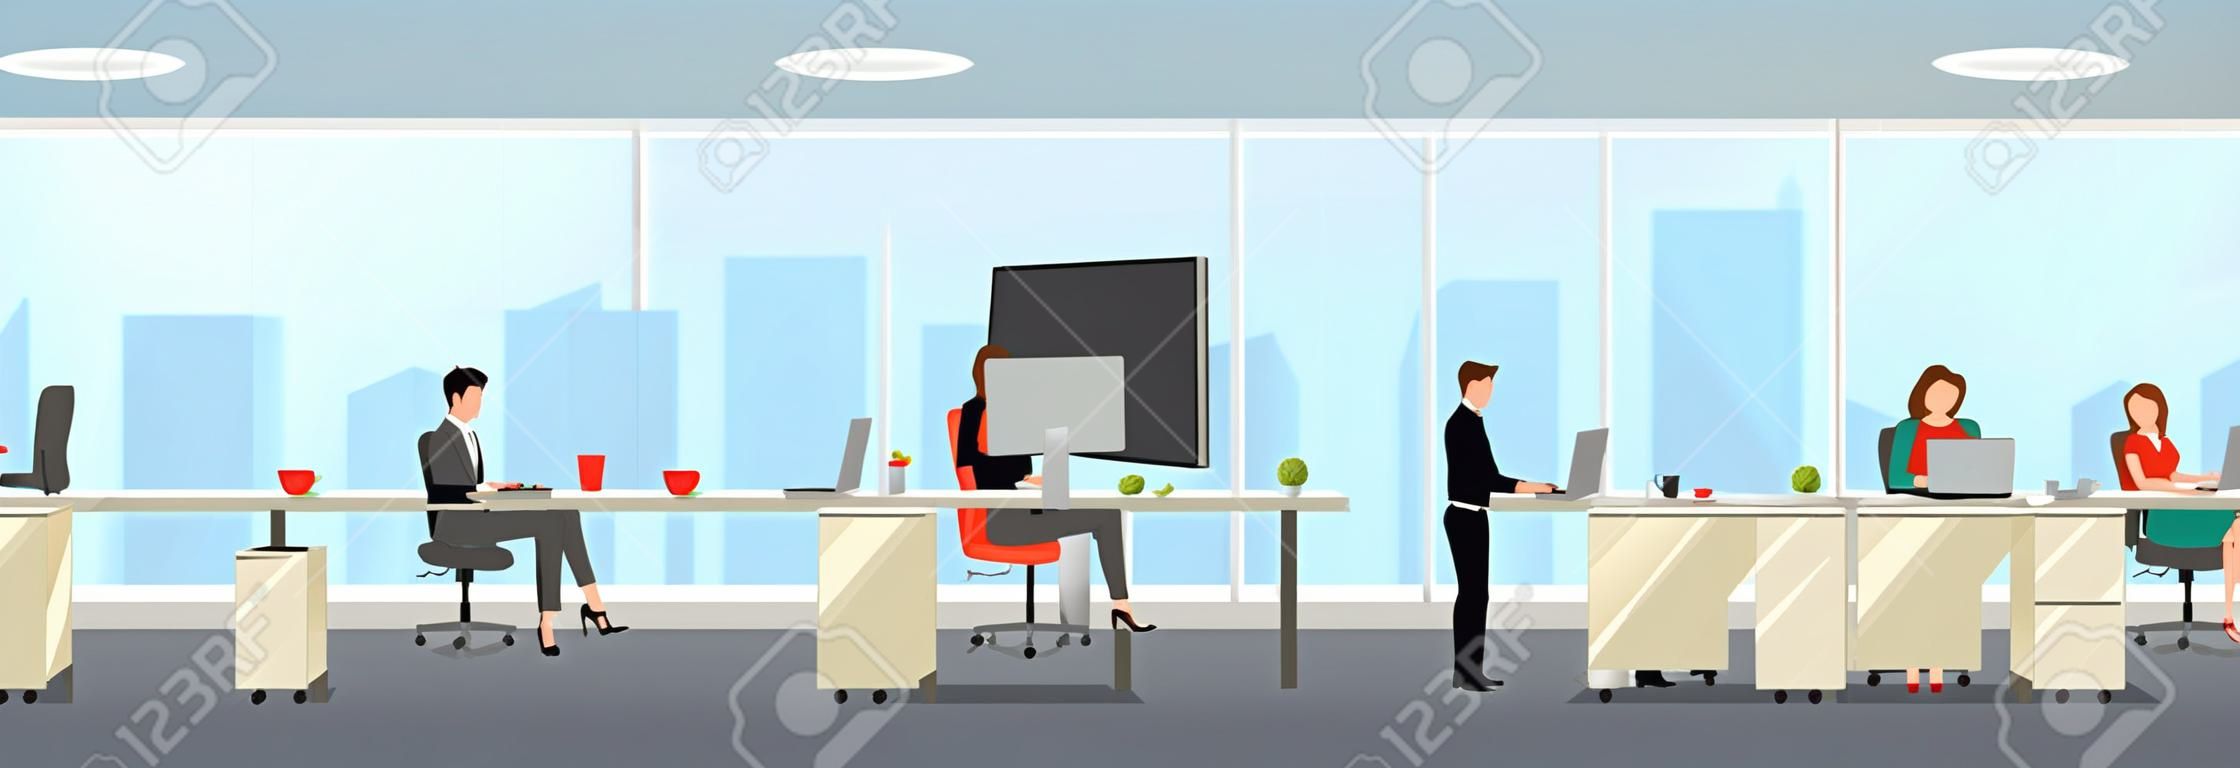 Interno di ufficio moderno con dipendenti. Area di lavoro dell'ufficio creativo con grande finestra, mobili interni, desktop, laptop.